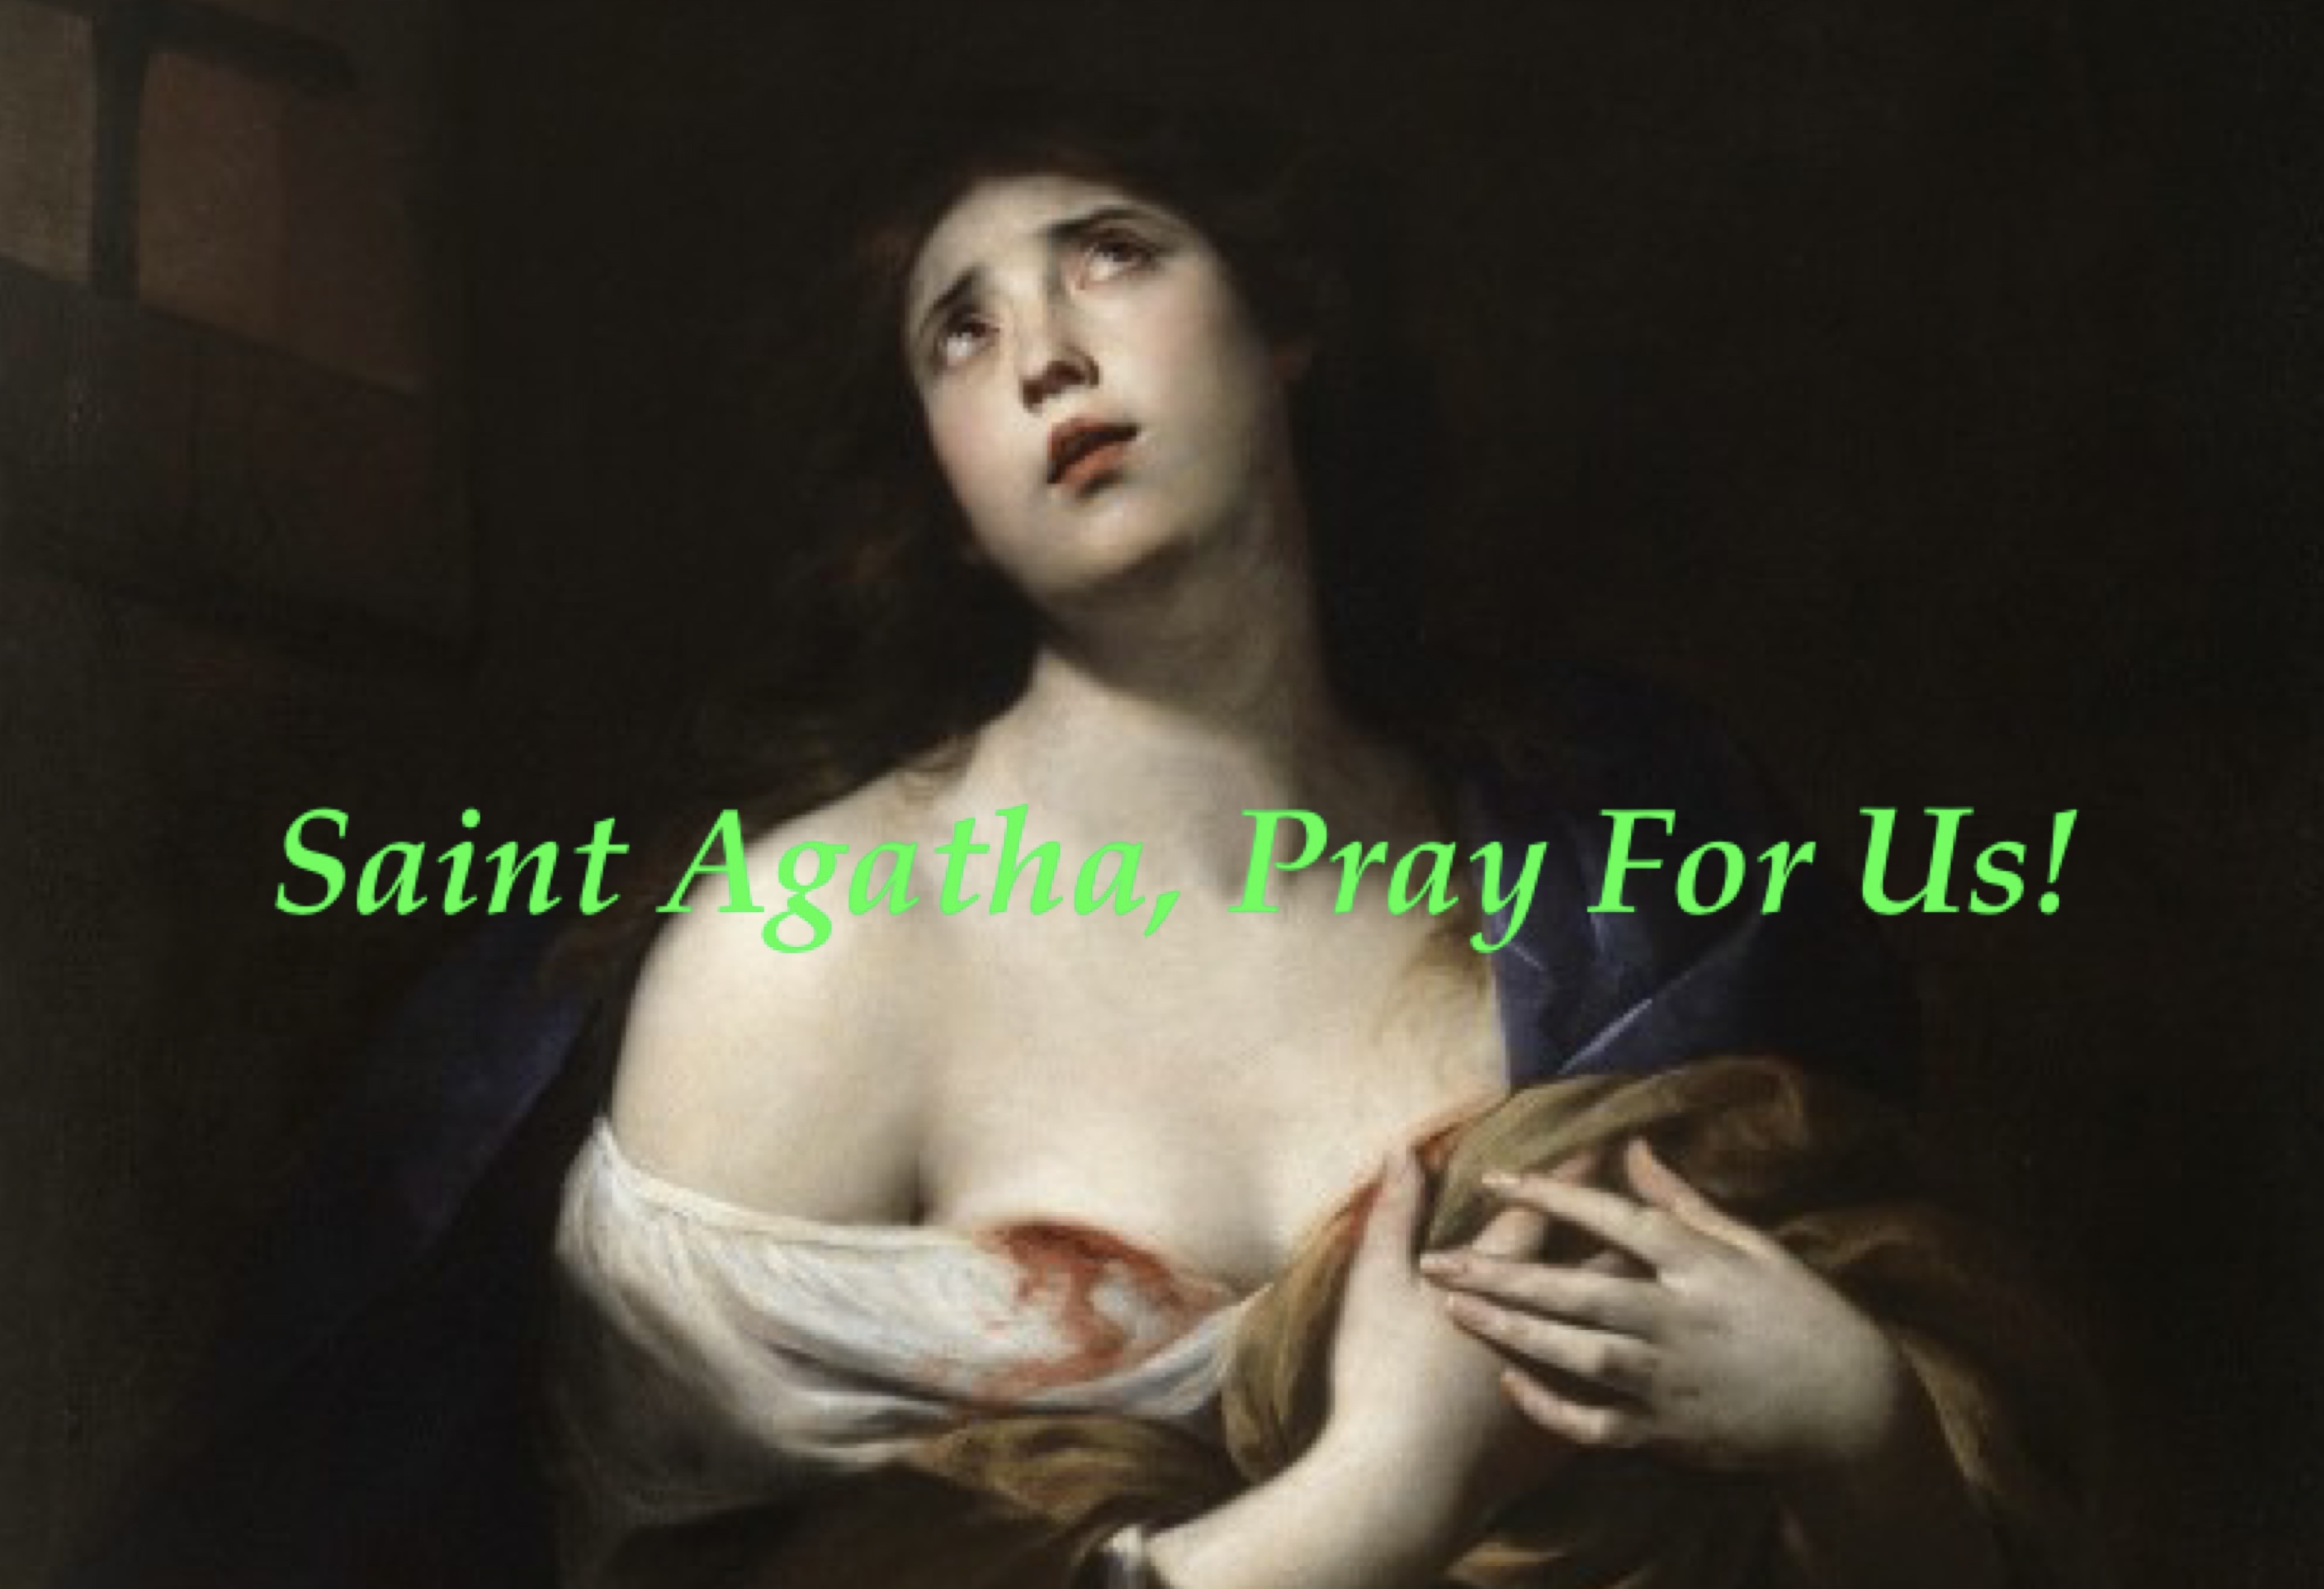 5th February - Saint Agatha